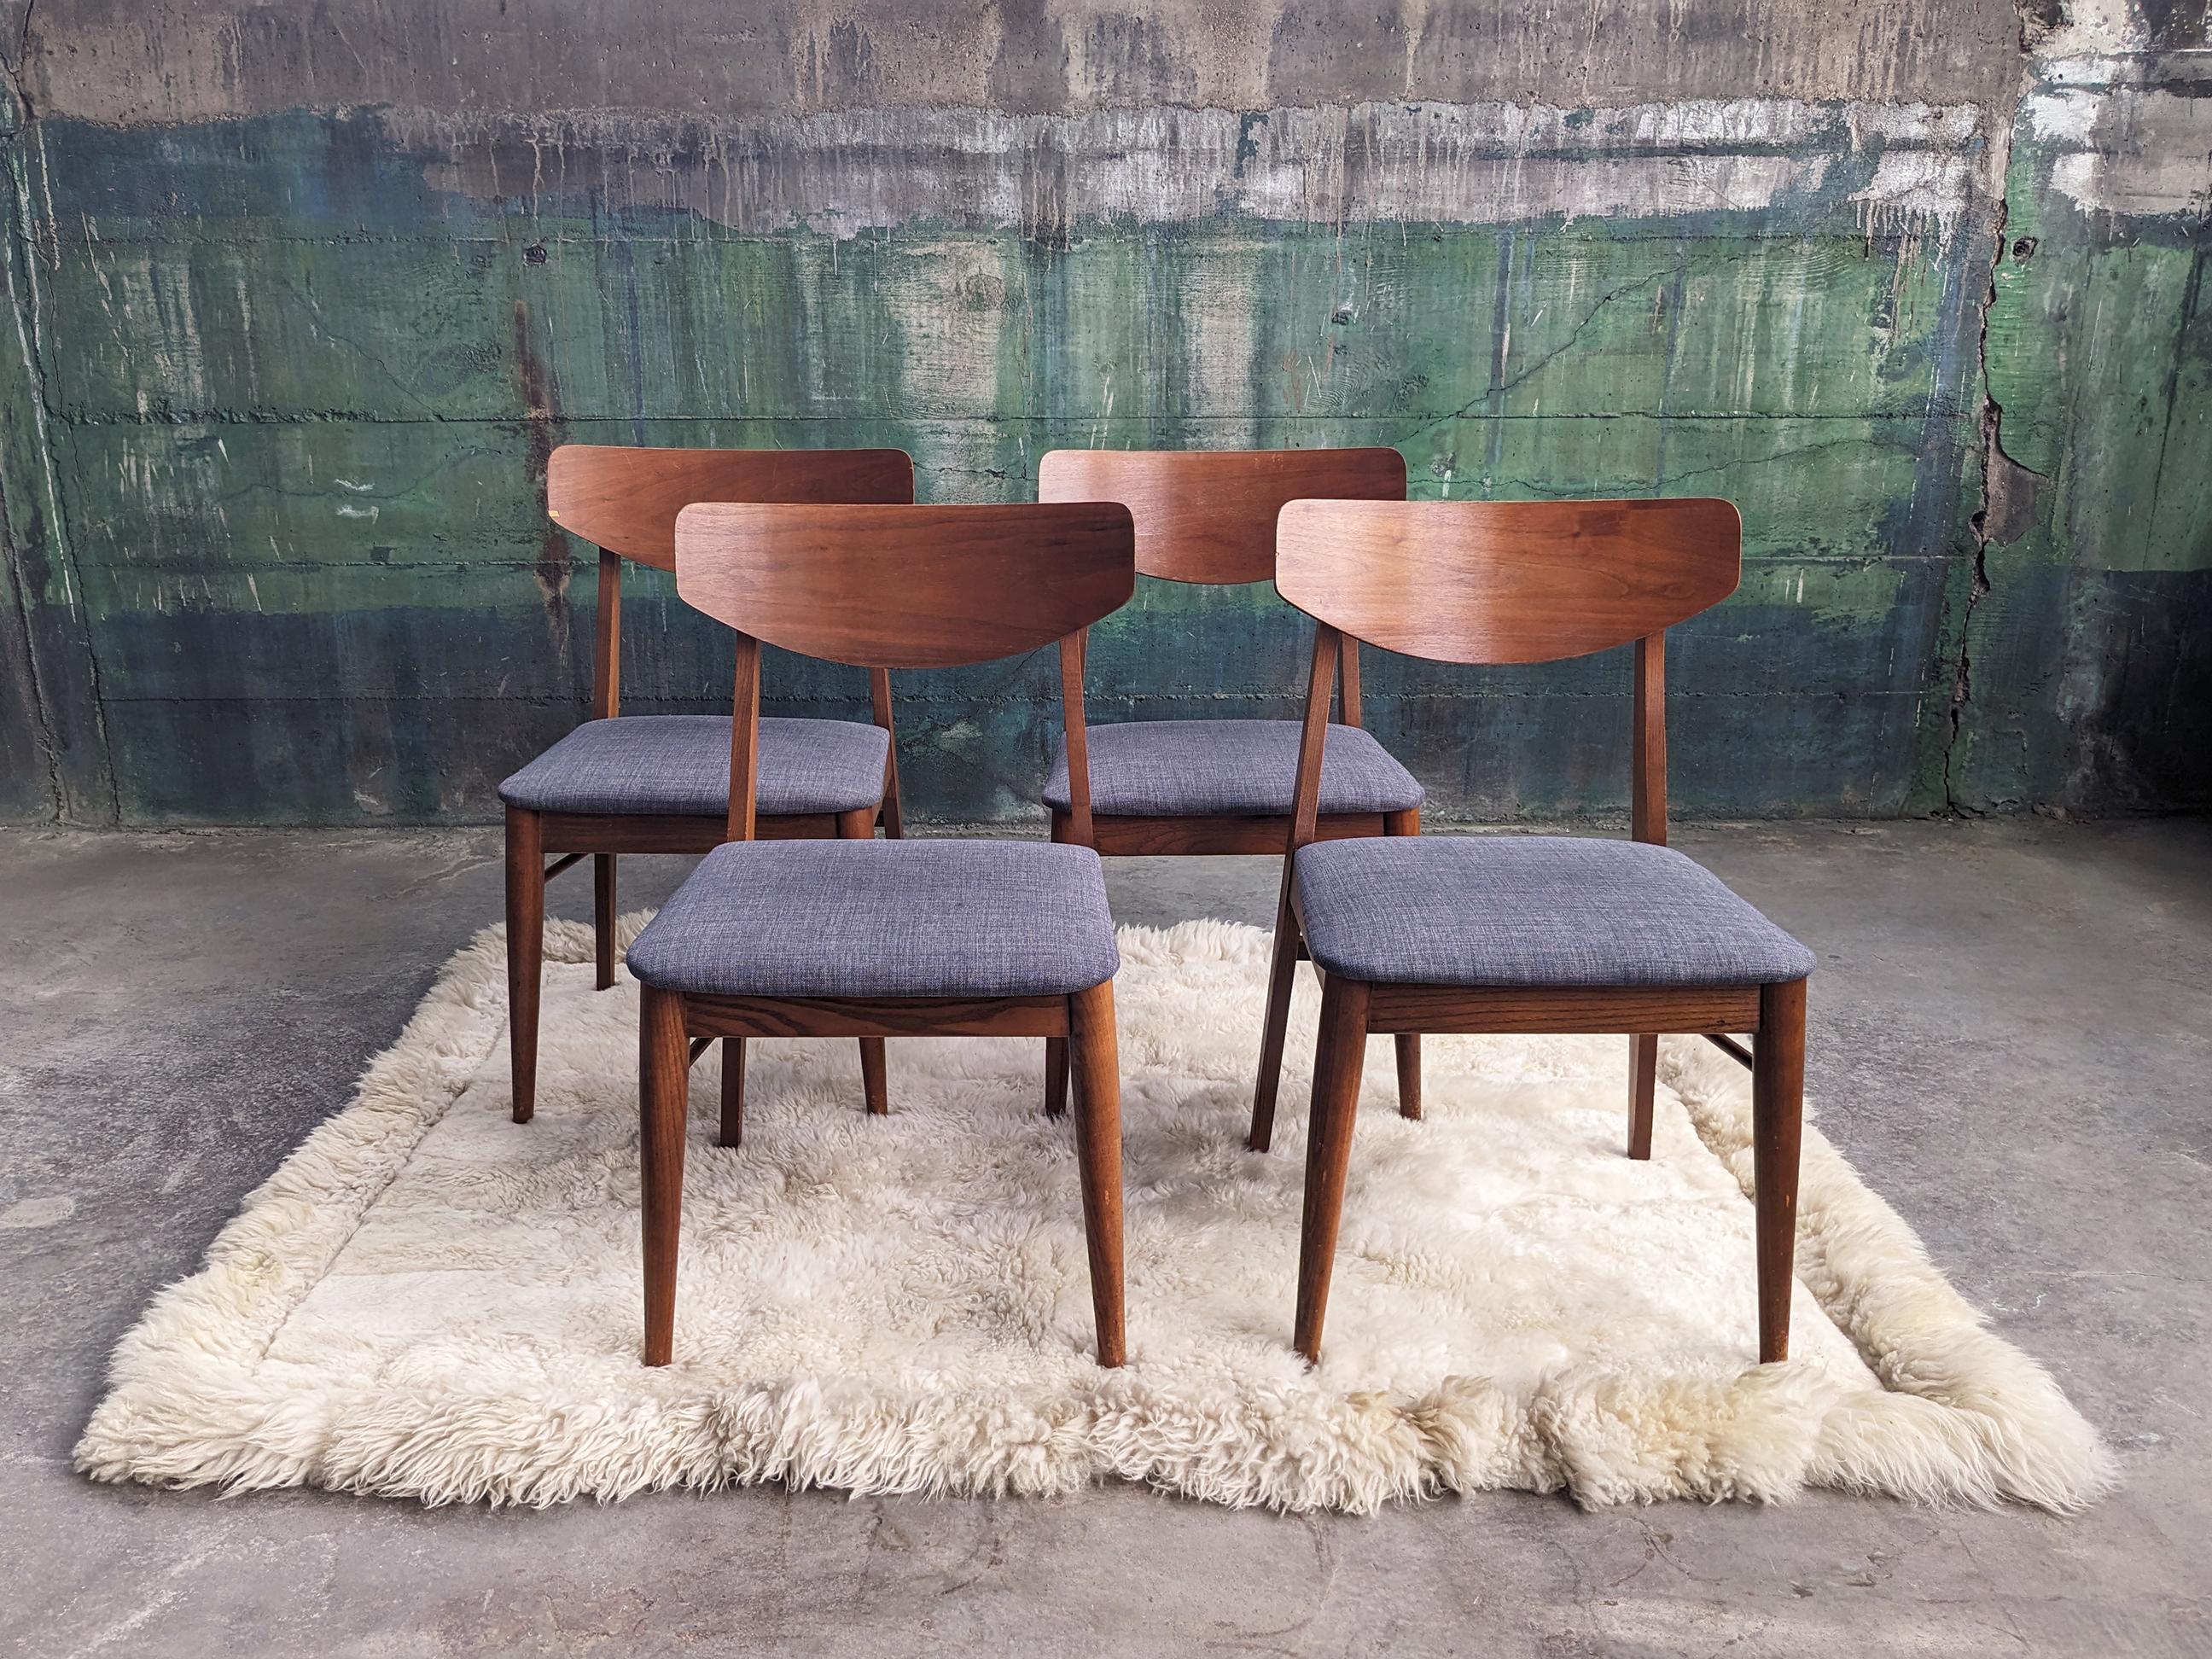 Schöner und sehr hochwertiger Satz von vier Esszimmerstühlen aus Nussbaumholz, für Stanley Furniture von Paul Browning, ca. 1960er Jahre.

Diese Stühle sind in ausgezeichnetem Vintage-Zustand und scheinen nur sehr wenig benutzt worden zu sein. Sie